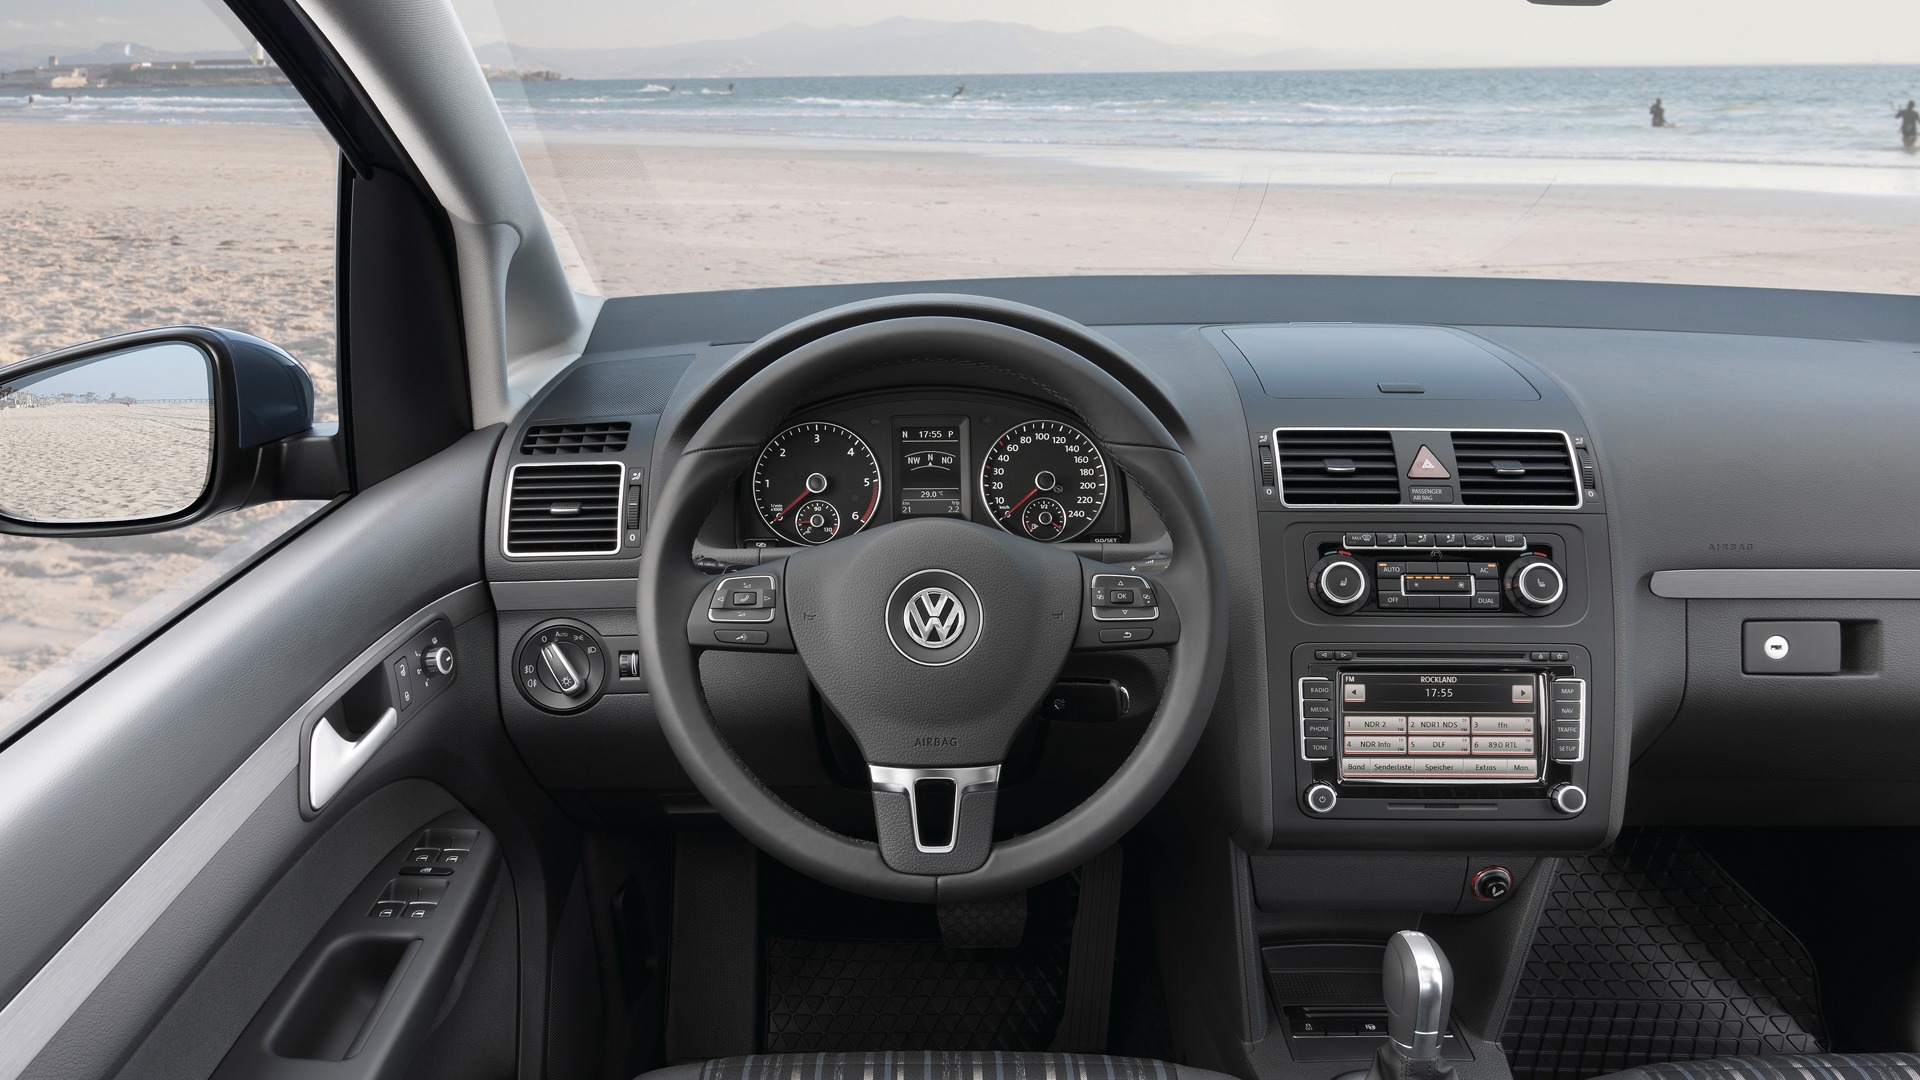 Volkswagen CrossTouran - 2010 大众14 - 1920x1080